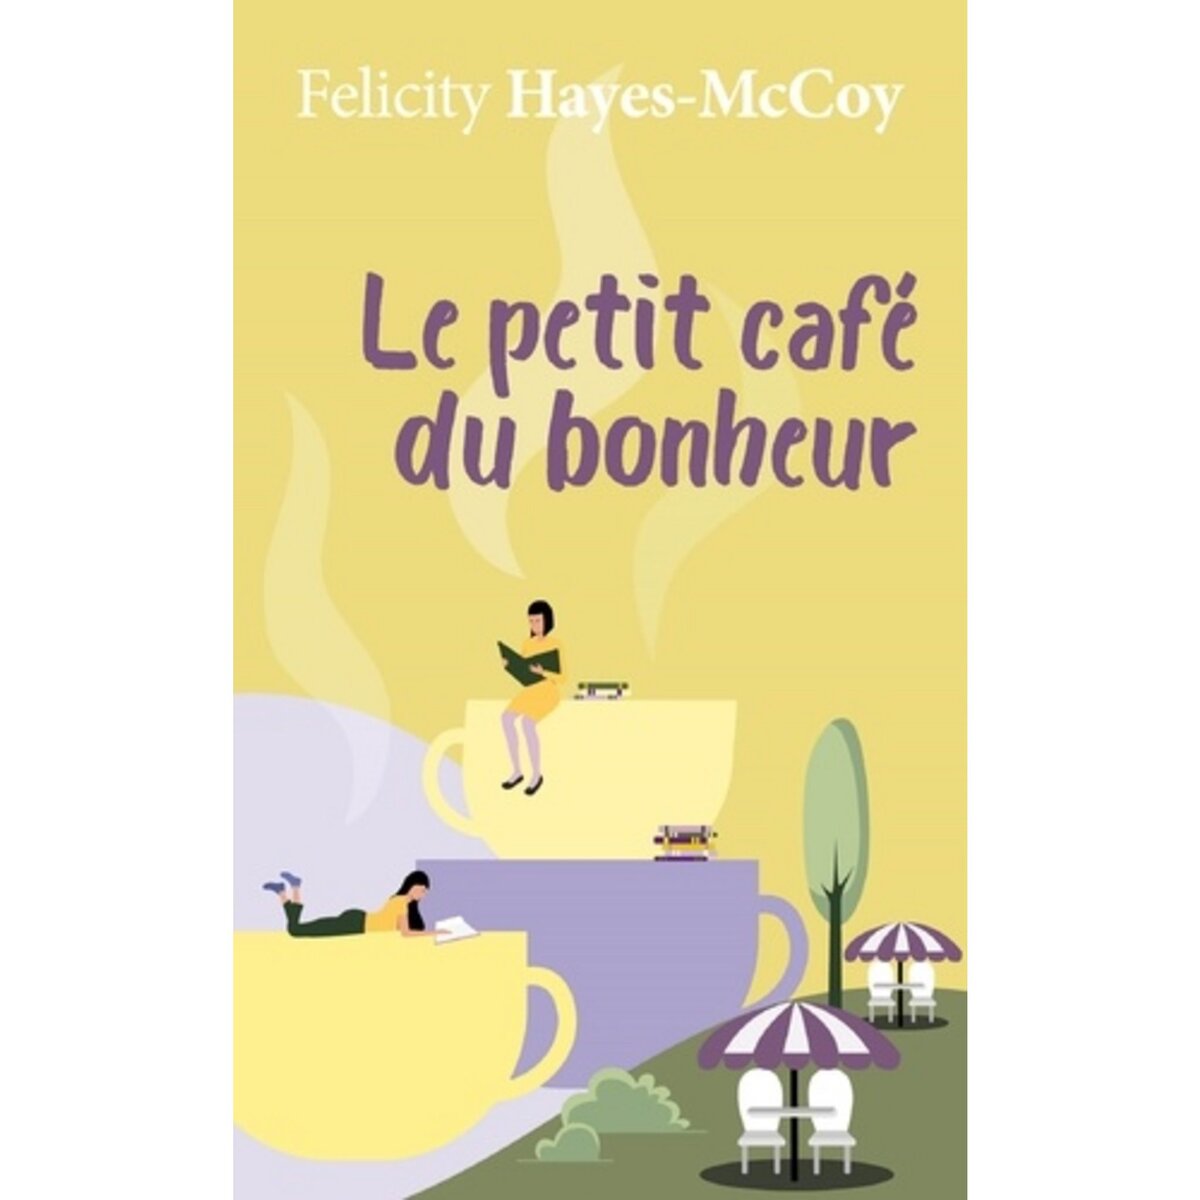  LE PETIT CAFE DU BONHEUR, Hayes-McCoy Felicity